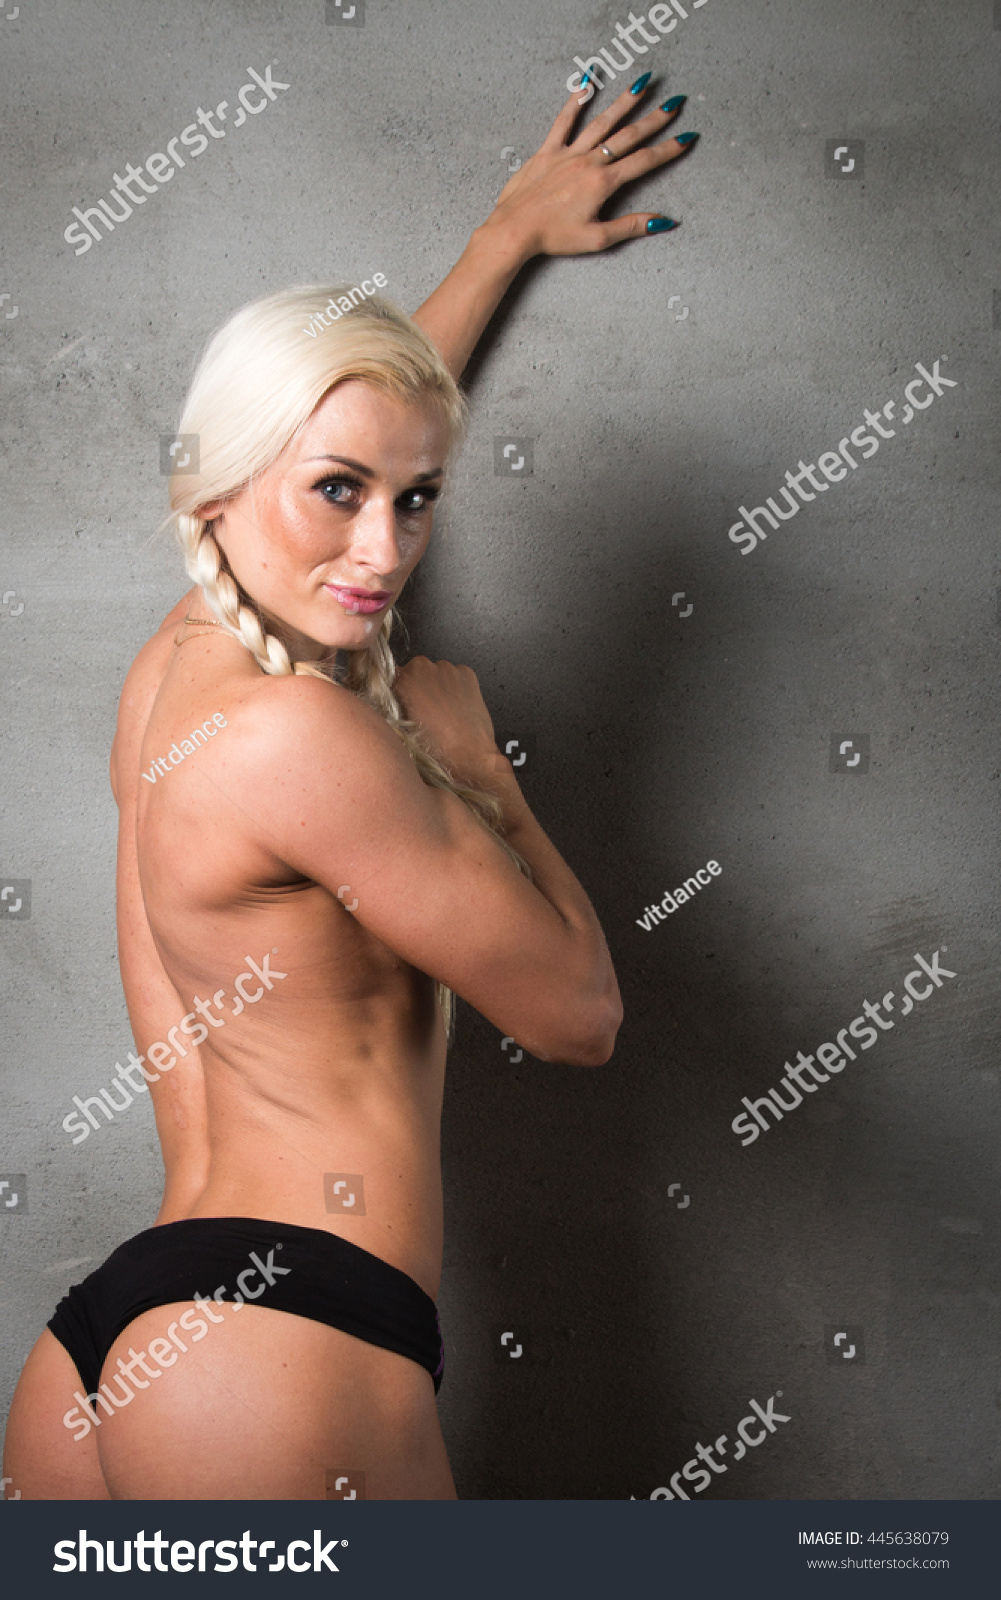 Fitness model girl tits